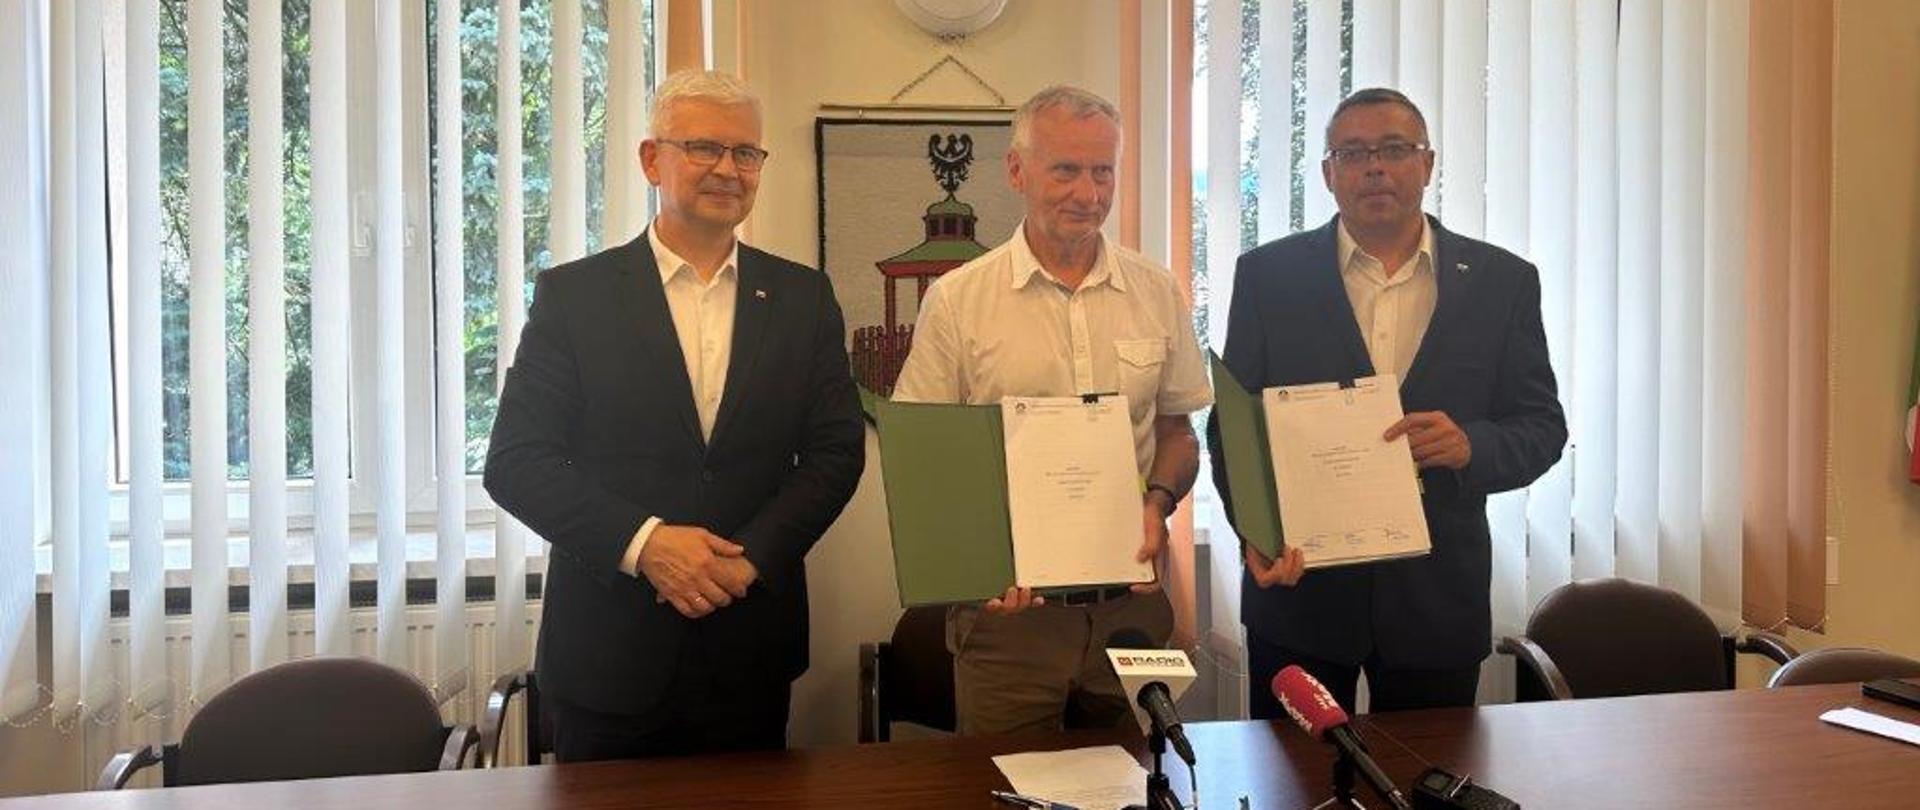 Podpisanie umowy o dofinansowanie NFOŚiGW na modernizację energetyczną Zielonej Szkoły w Jedlinie-Zdroju na Dolnym Śląsku